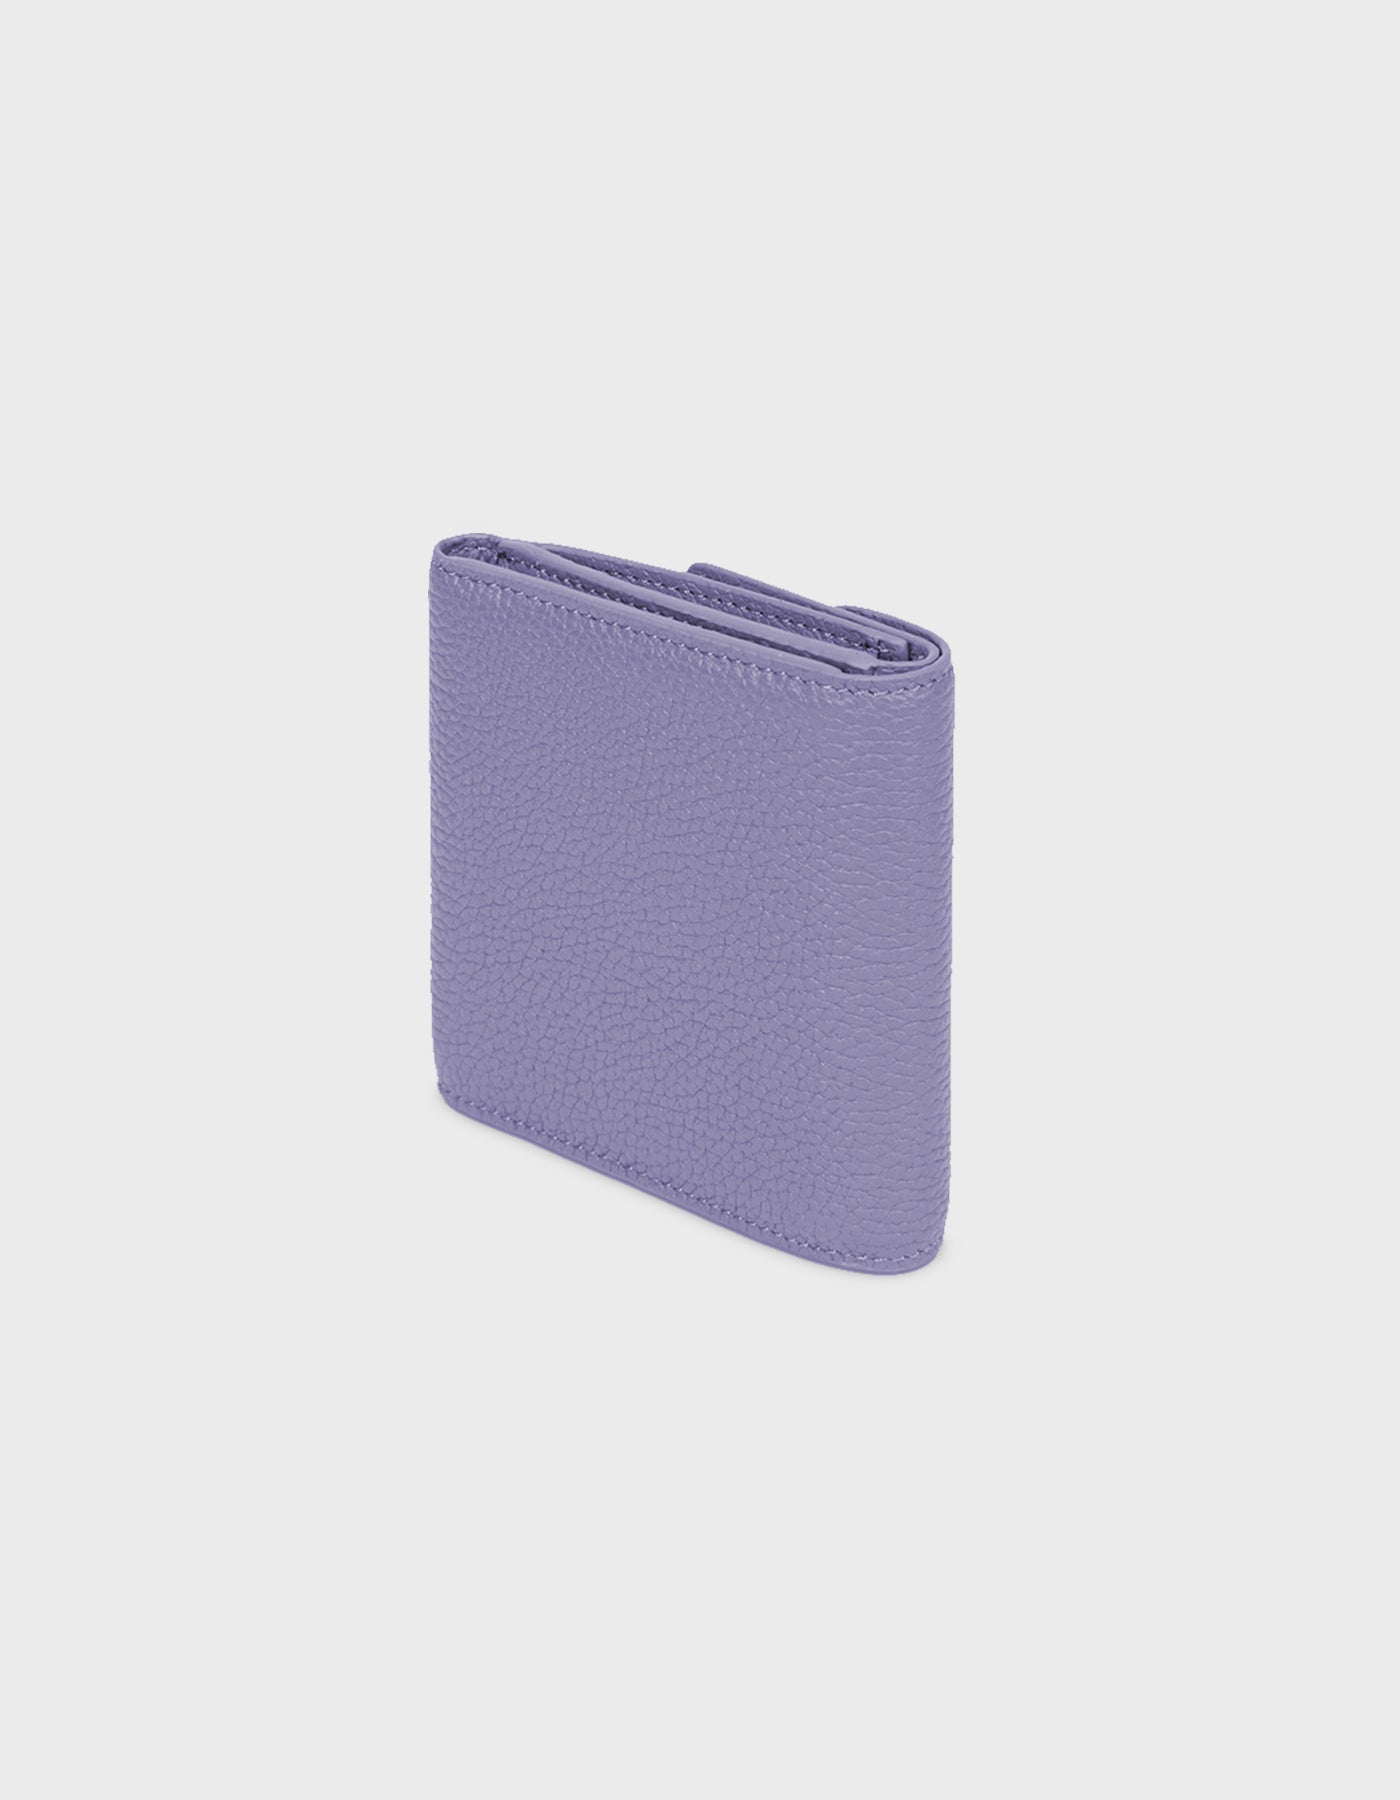 HiVa Atelier - Larus Compact Wallet Lavender